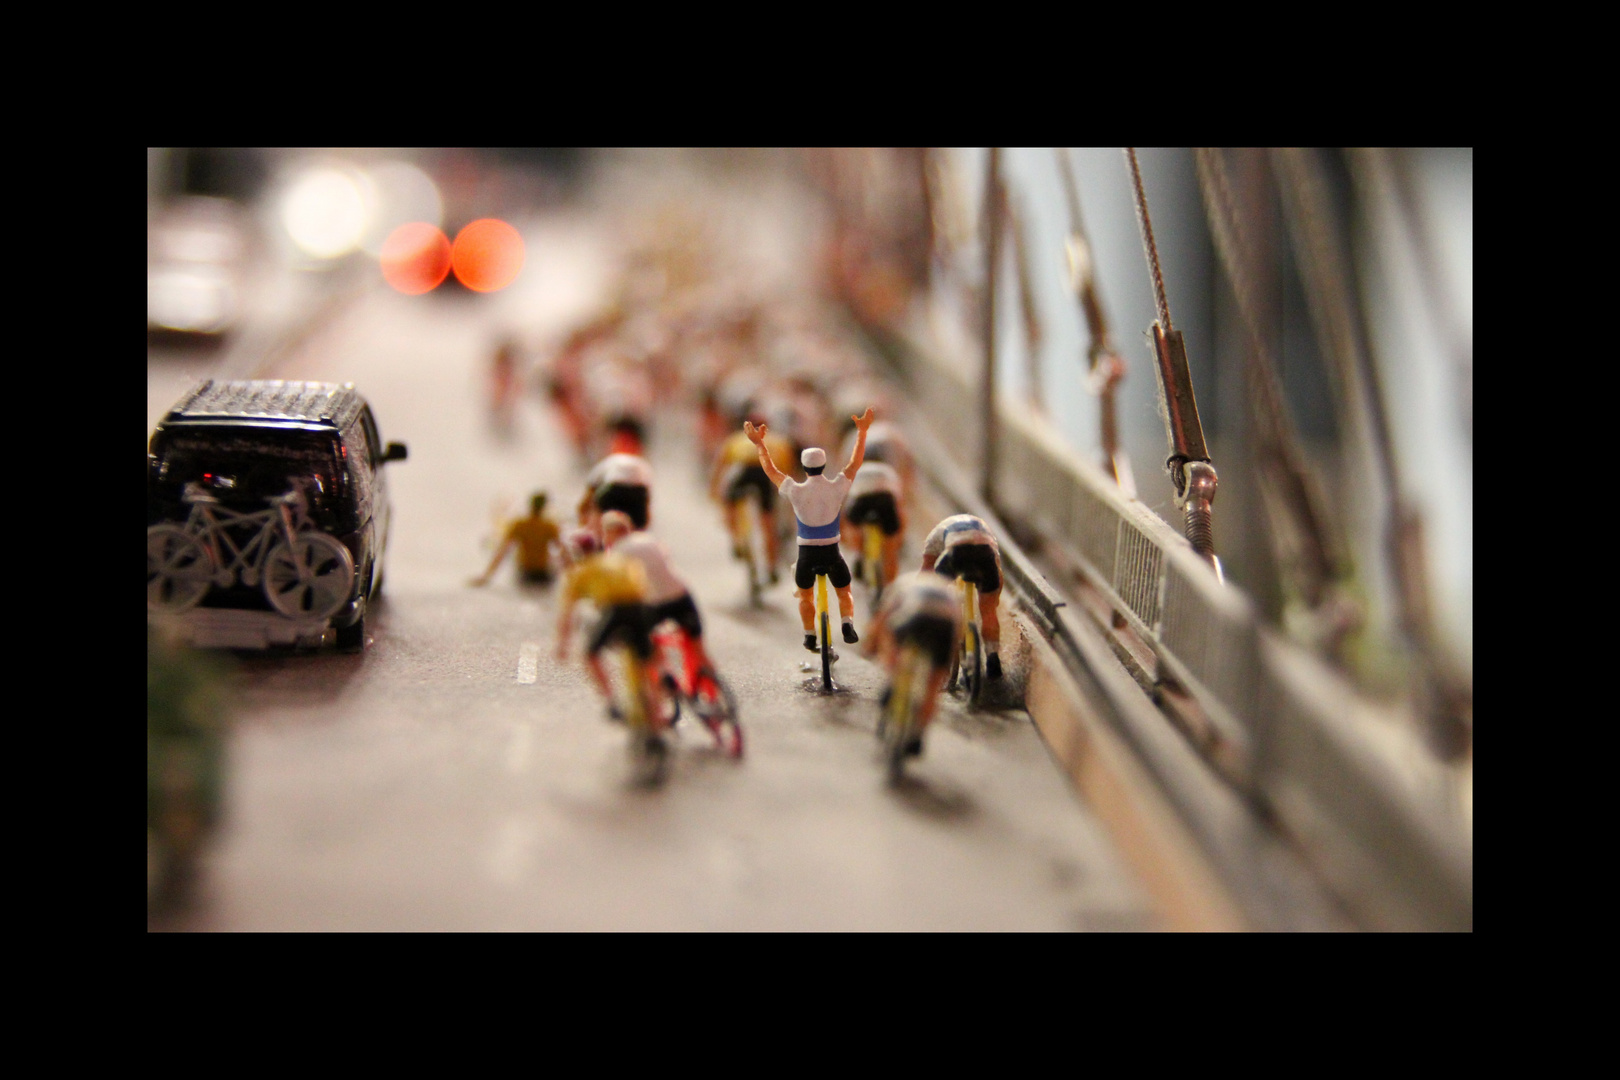 Tour de France im HH Miniaturwunderland